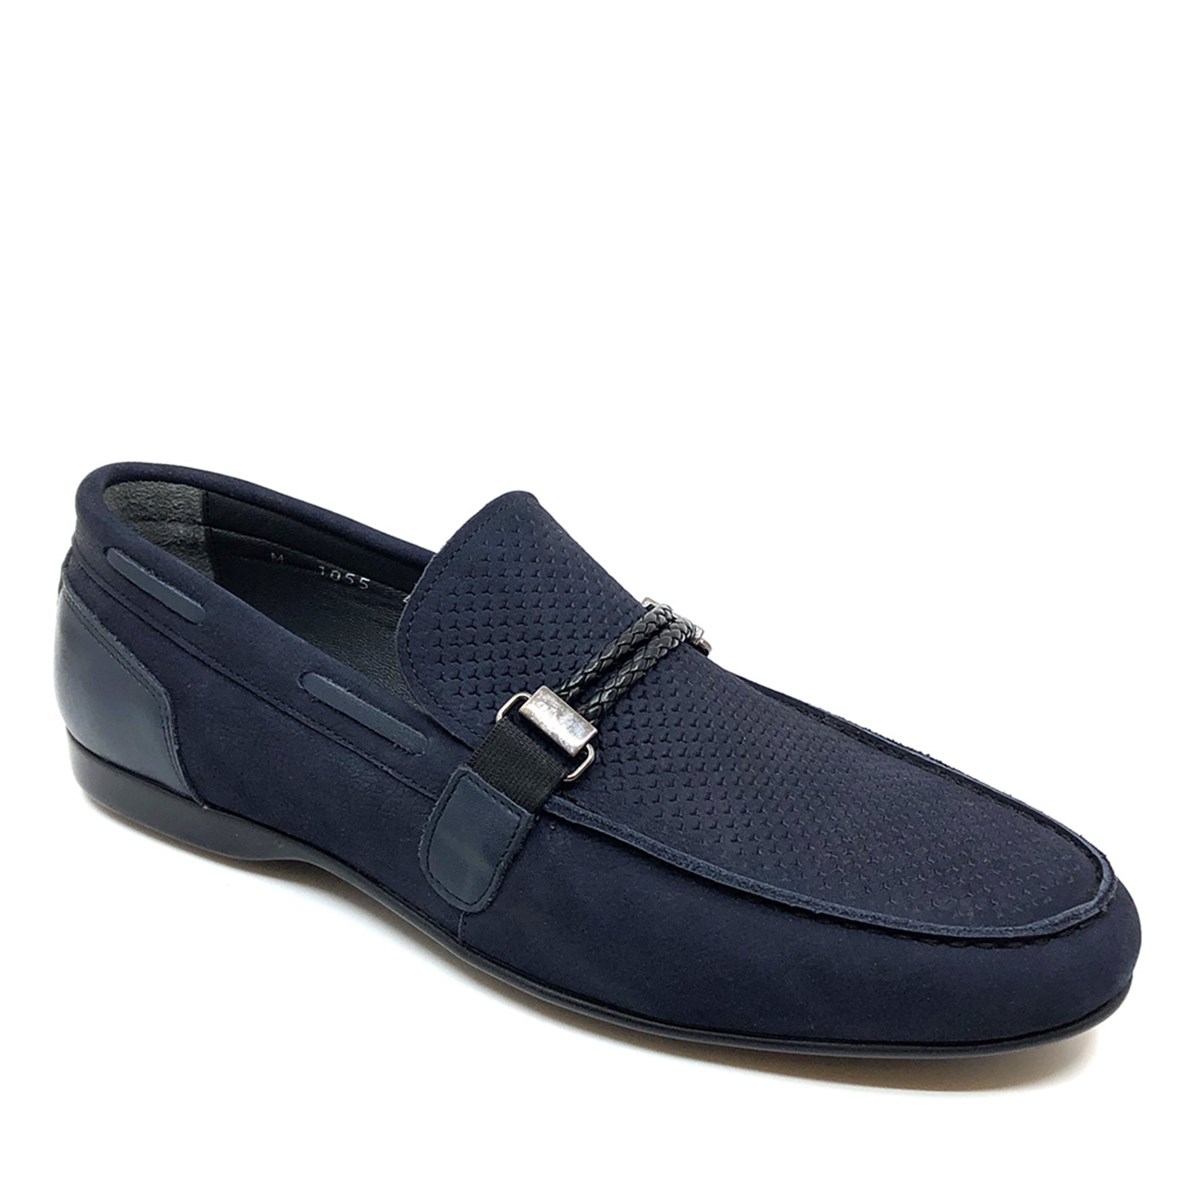 Erkek Bağcıksız Yazlık Loafer  Nubuk Hakiki Deri Ayakkabı, Renk: Lacivert, Beden: 43